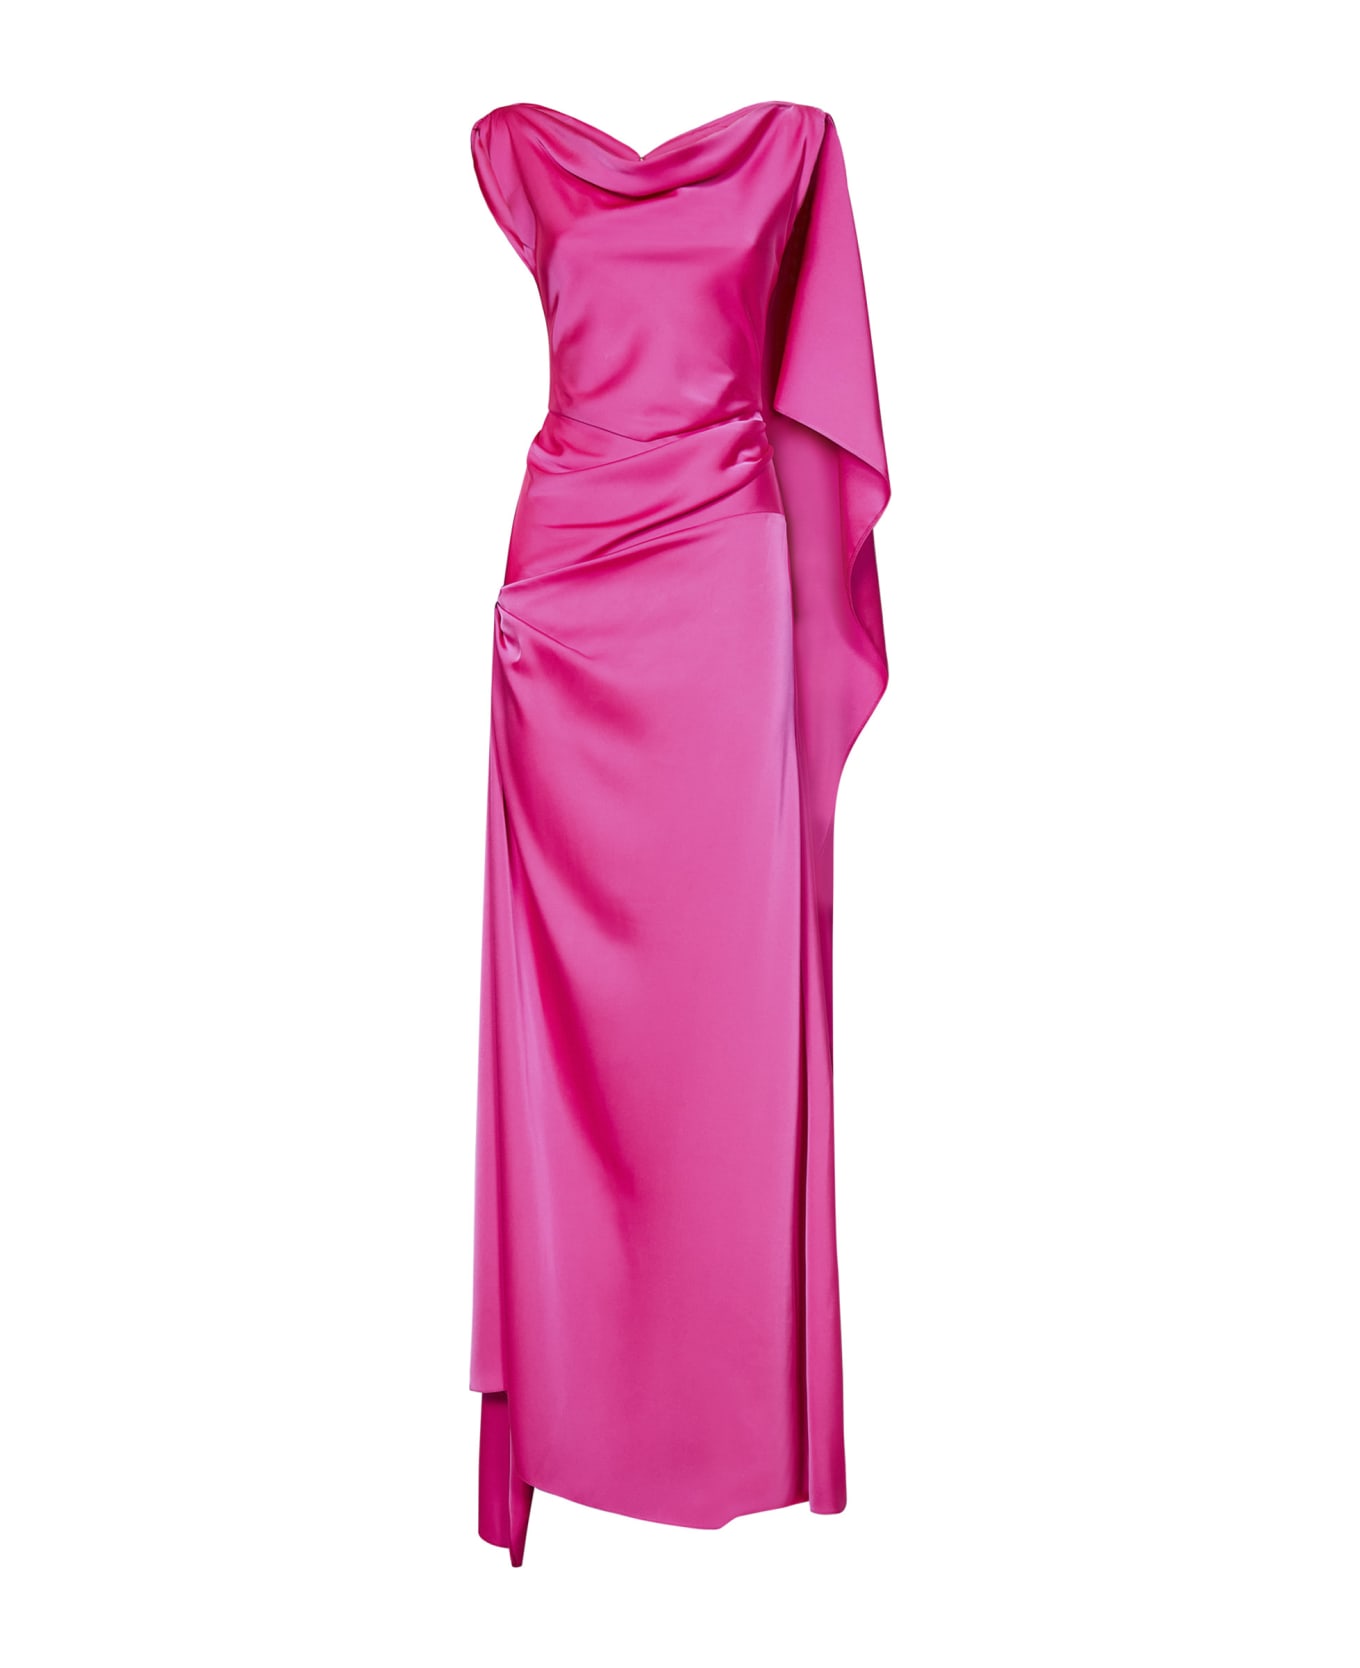 Rhea Costa Long Dress - Fuxia